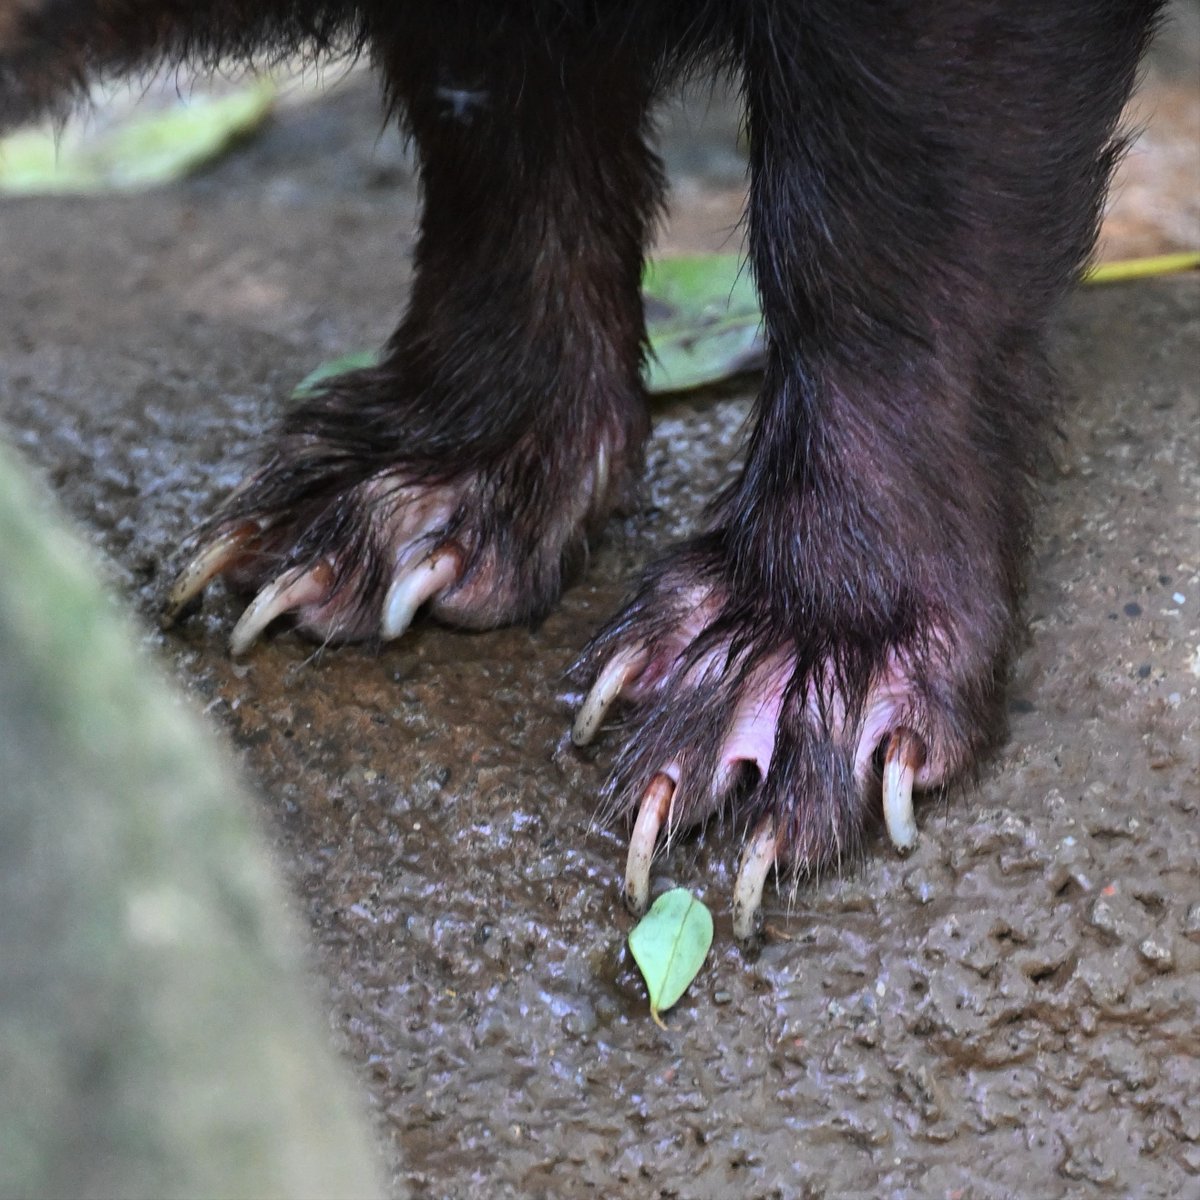 水辺に生息する #ヤブイヌ には、指間にある皮膚が水掻きのように発達しています（webbed feet）。前足を拡大した右の写真では、第３趾と4趾の間で目立っています。犬でもラブラドルレトリバーなどの品種で認められます。
#bushdog #ズーラシア #ZOORASIA